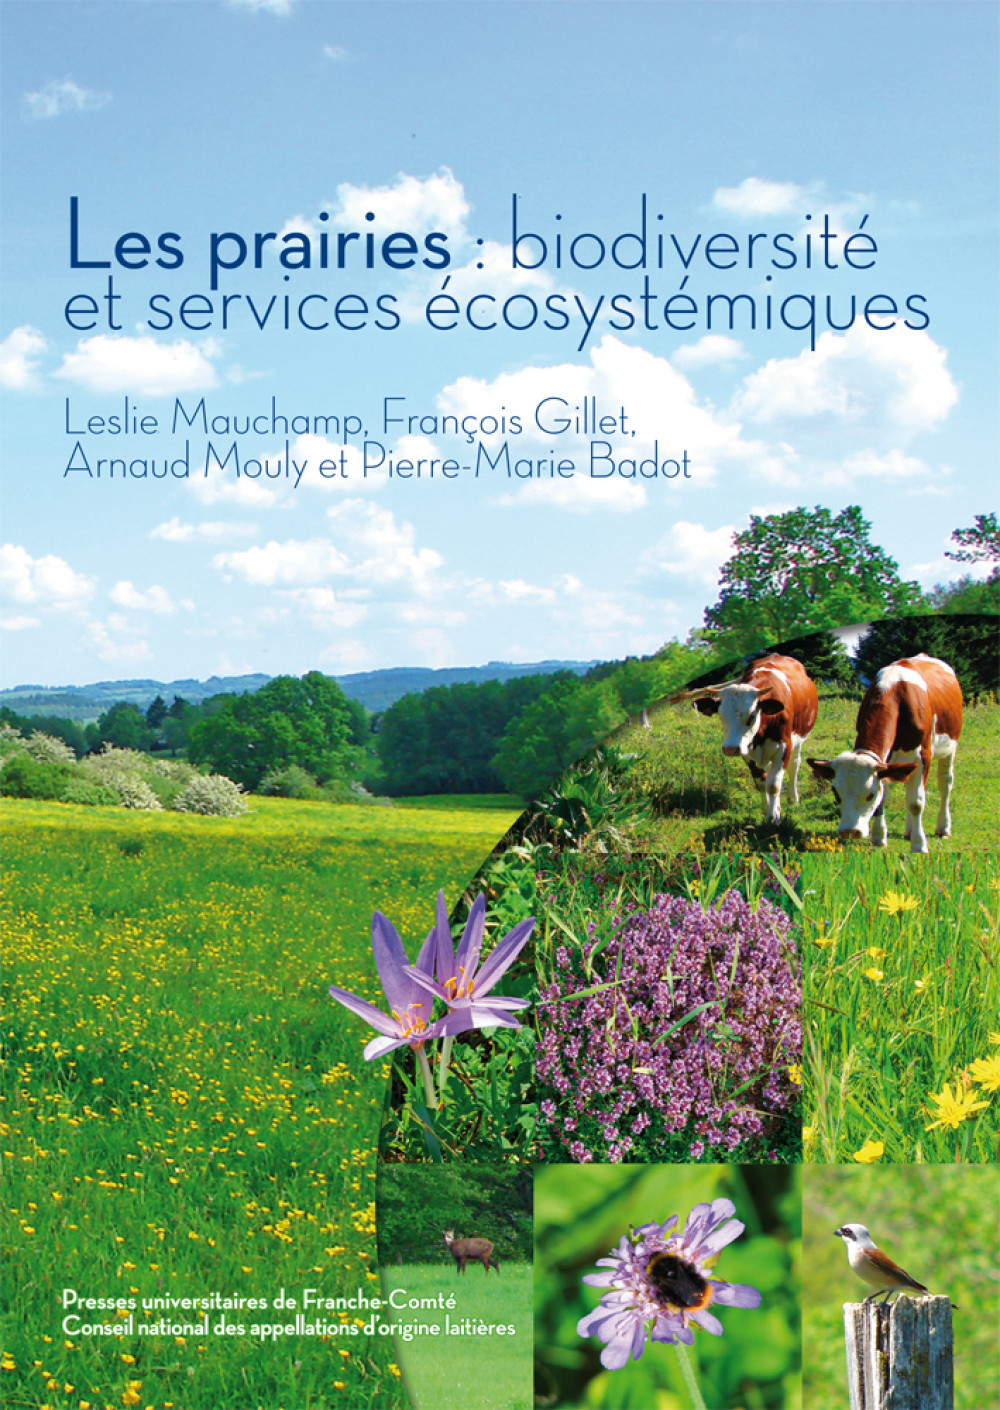 Les prairies : biodiversité et services écosystémiques